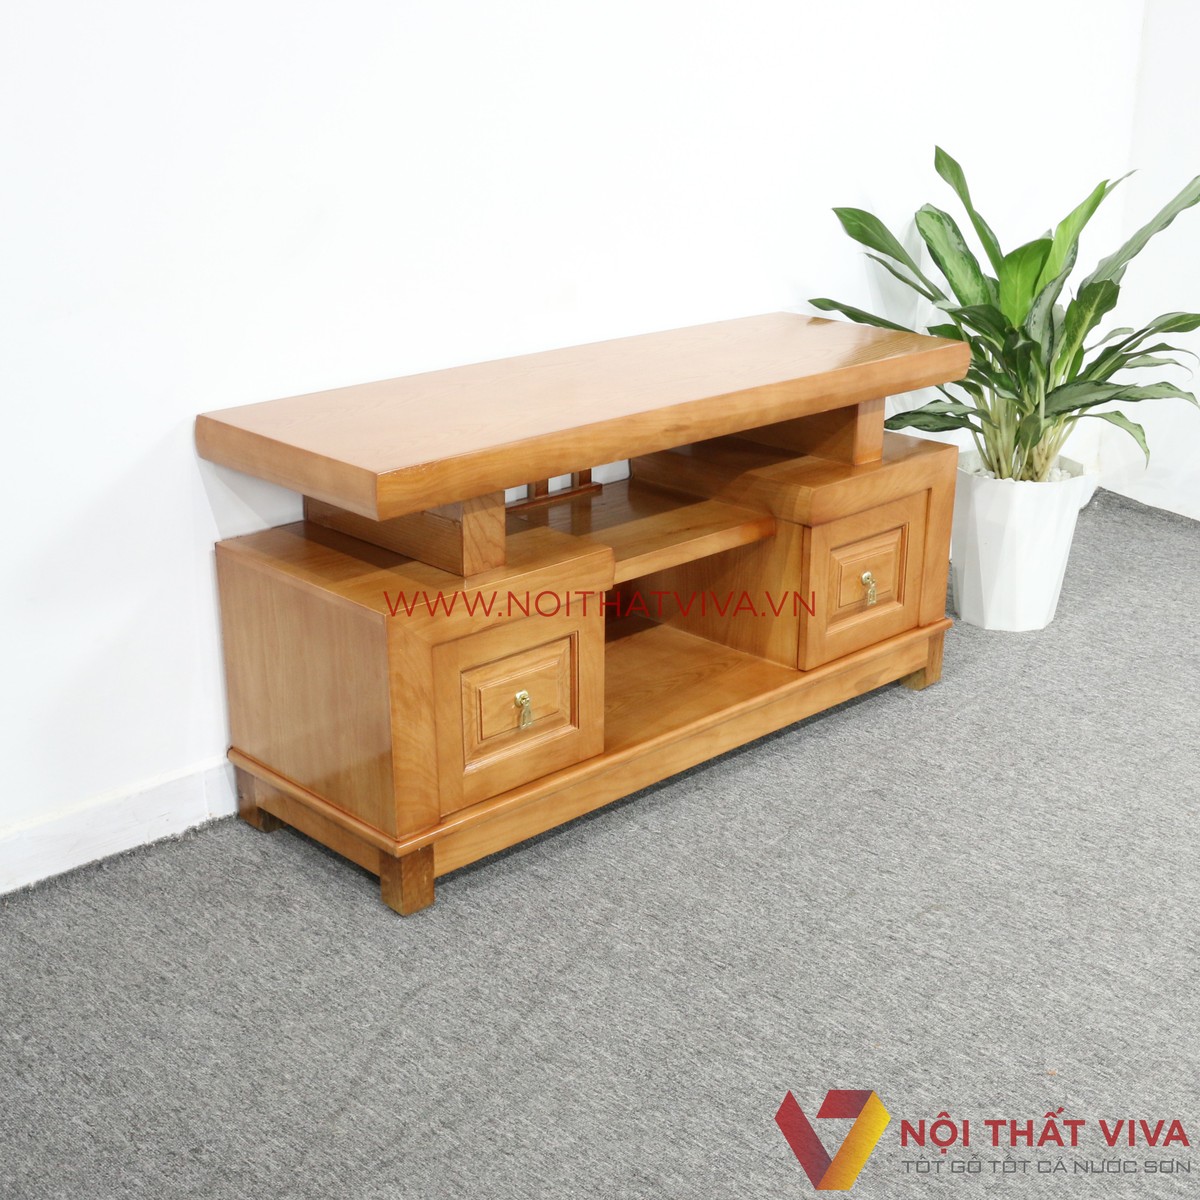 Kệ Tivi gỗ sồi Nga: Được làm từ gỗ sồi Nga, Kệ Tivi này là lựa chọn hoàn hảo để tôn lên không gian phòng khách của bạn. Với chất lượng vượt trội và thiết kế tinh tế, sản phẩm này sẽ mang đến cho bạn không gian sang trọng và ấm cúng.